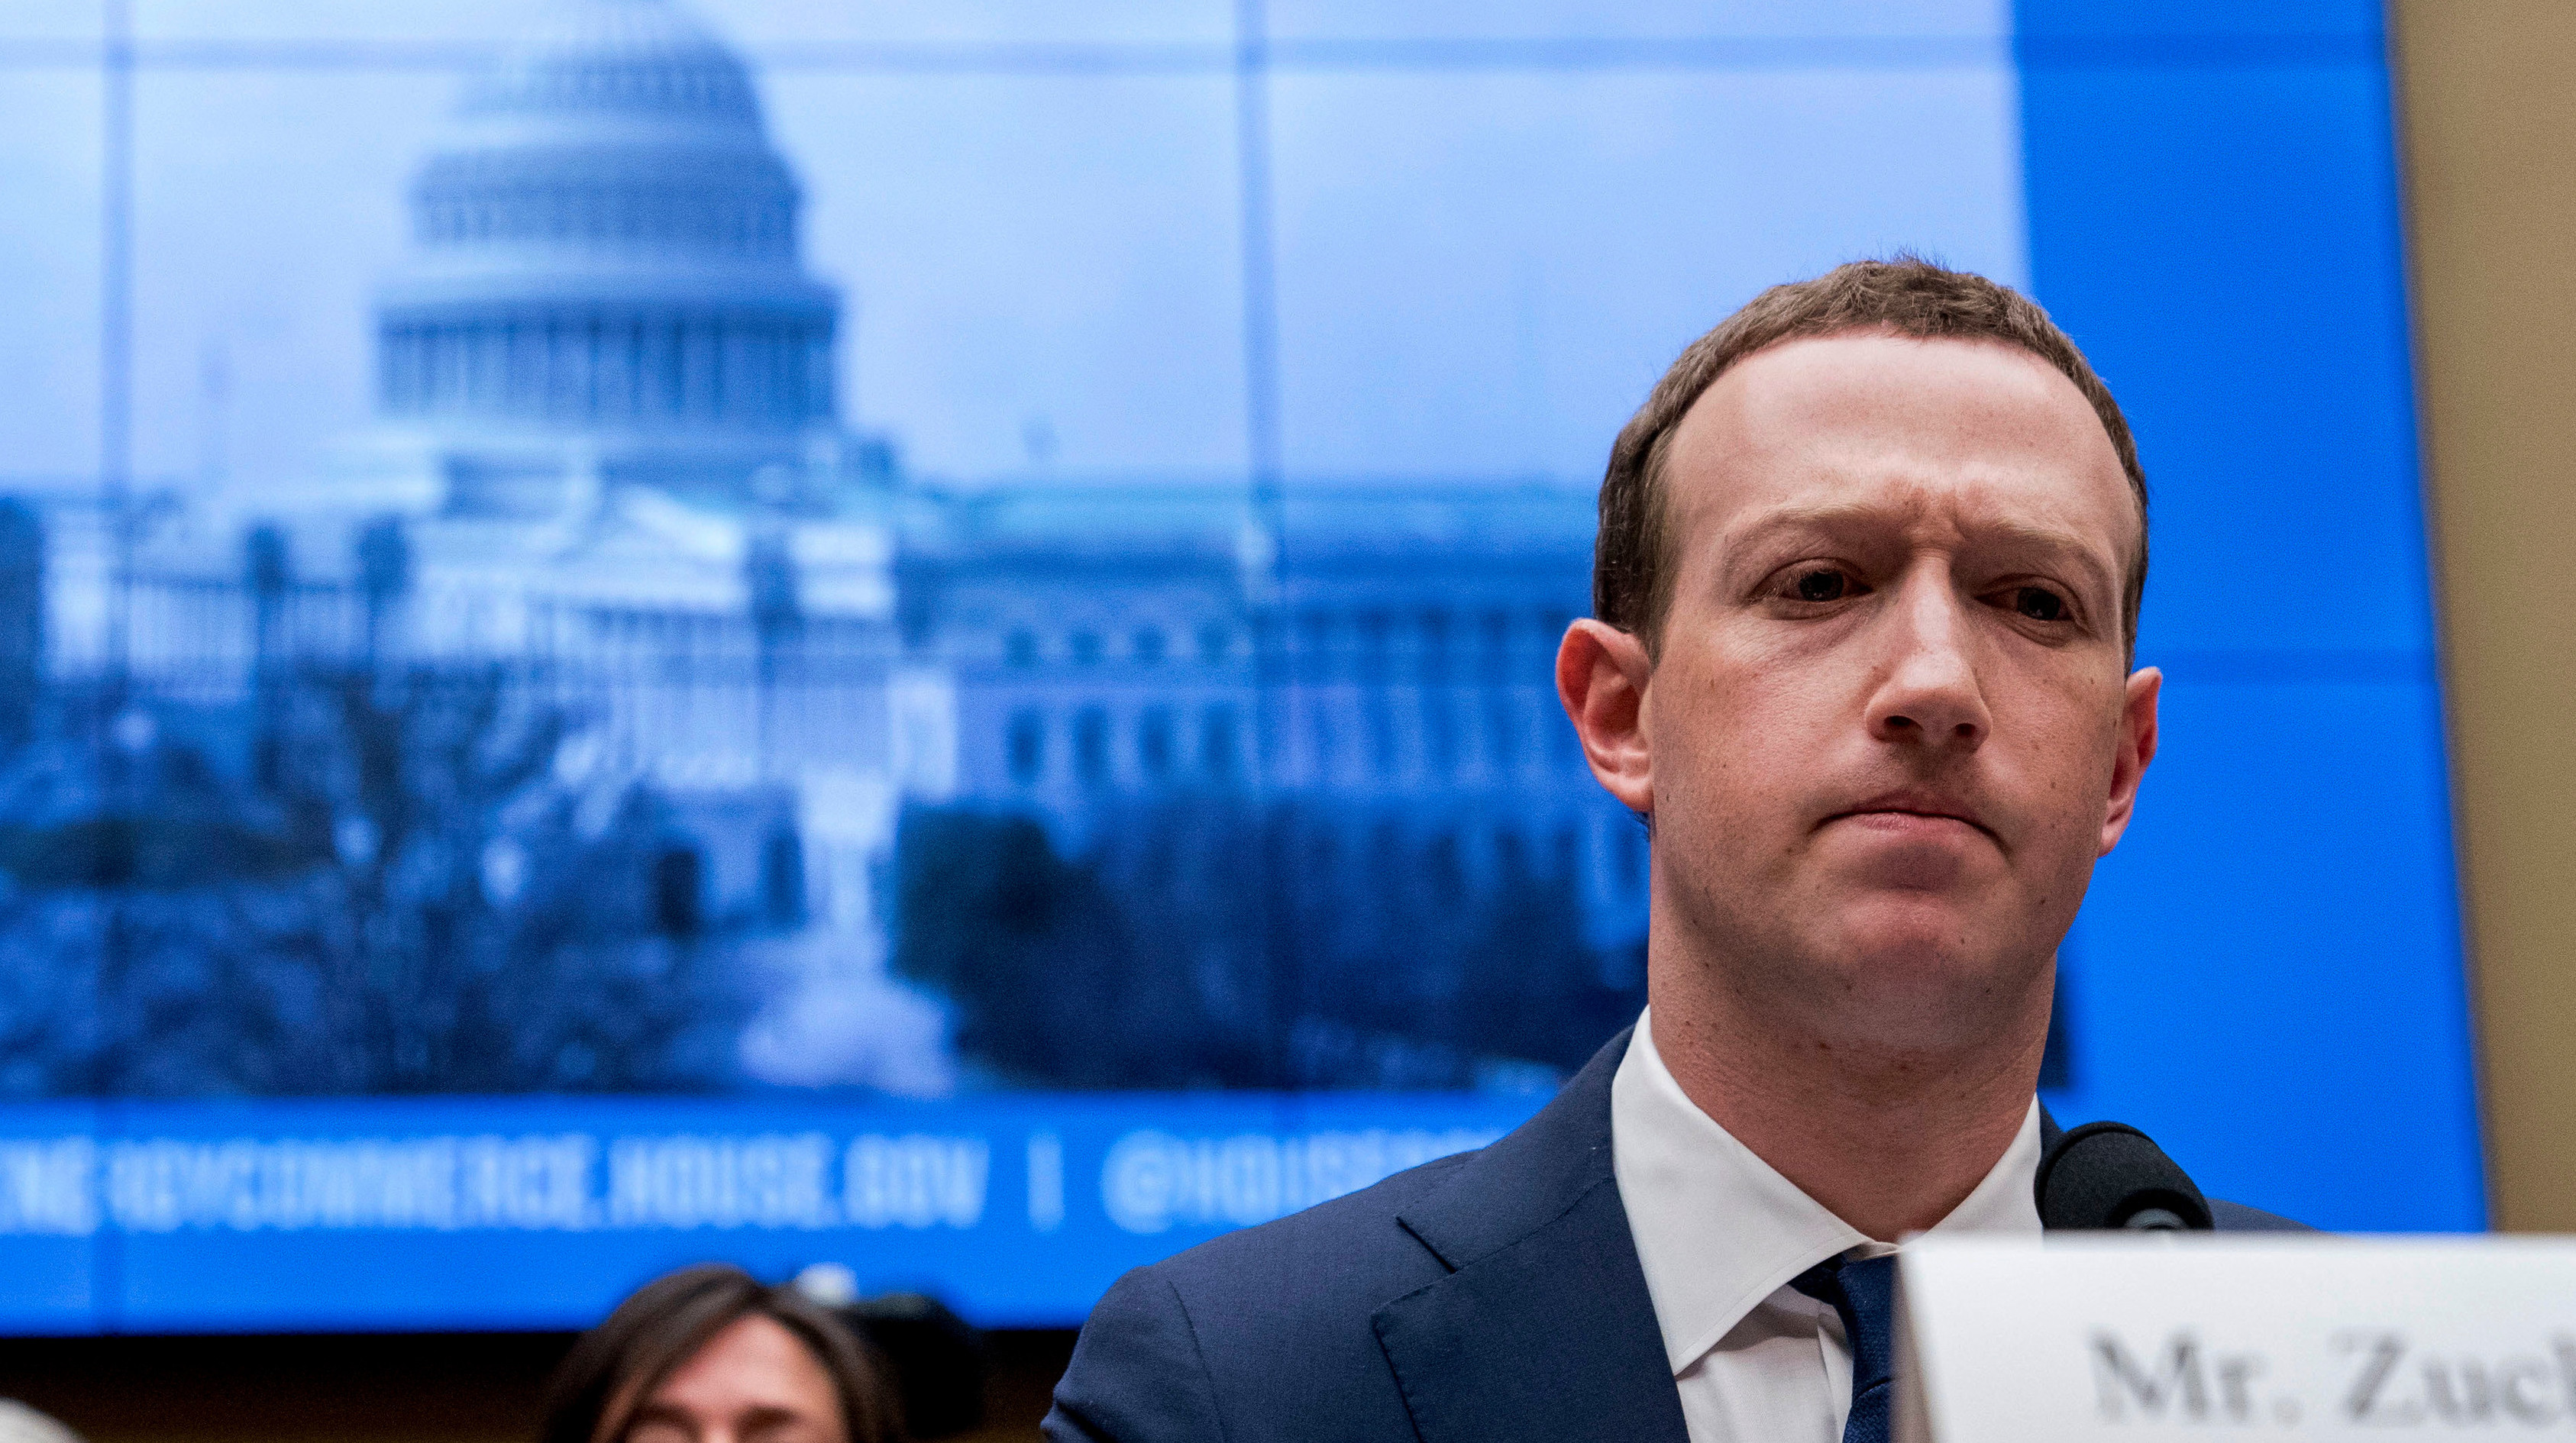 mark zuckerberg, ceo do facebook, em audiência no congresso americano. ele parece estar com uma expressão contrariada.